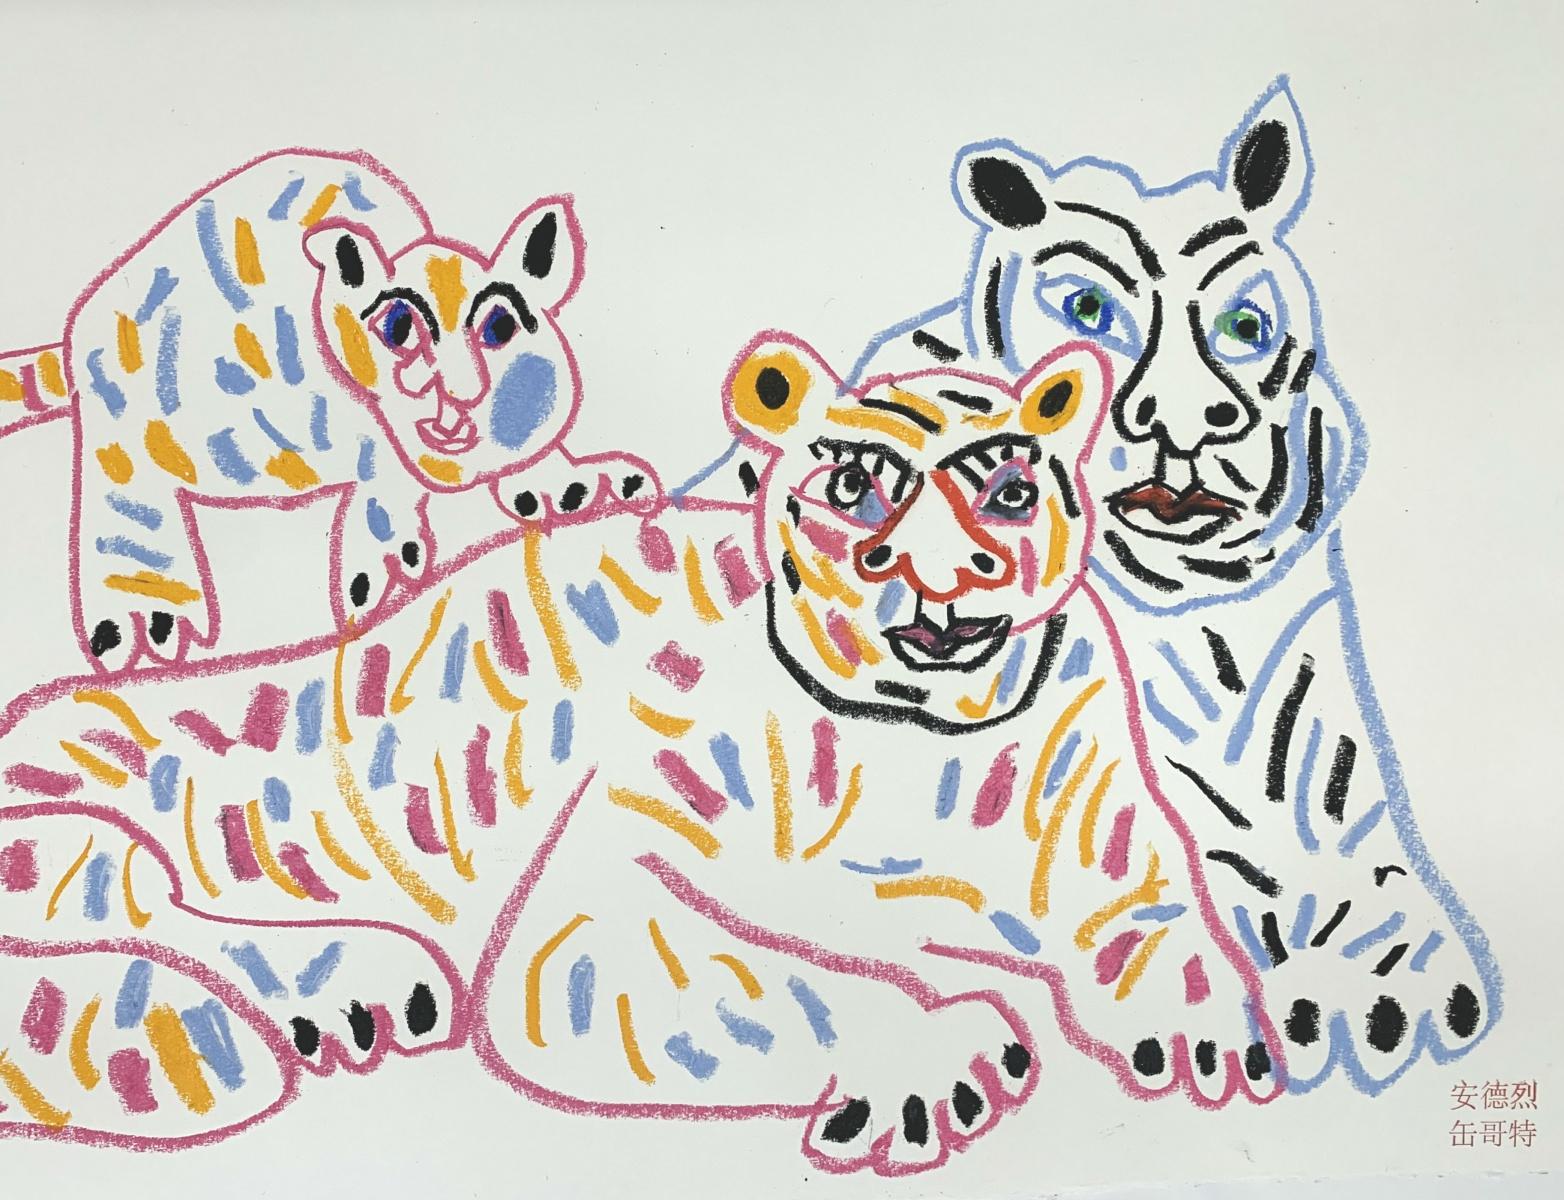 Tiger mit Sohn - Polnischer Kunstmeister, Pastellfarben, Tiere, chinesisches Tierkreiszeichen (Zeitgenössisch), Painting, von Andrzej Fogtt